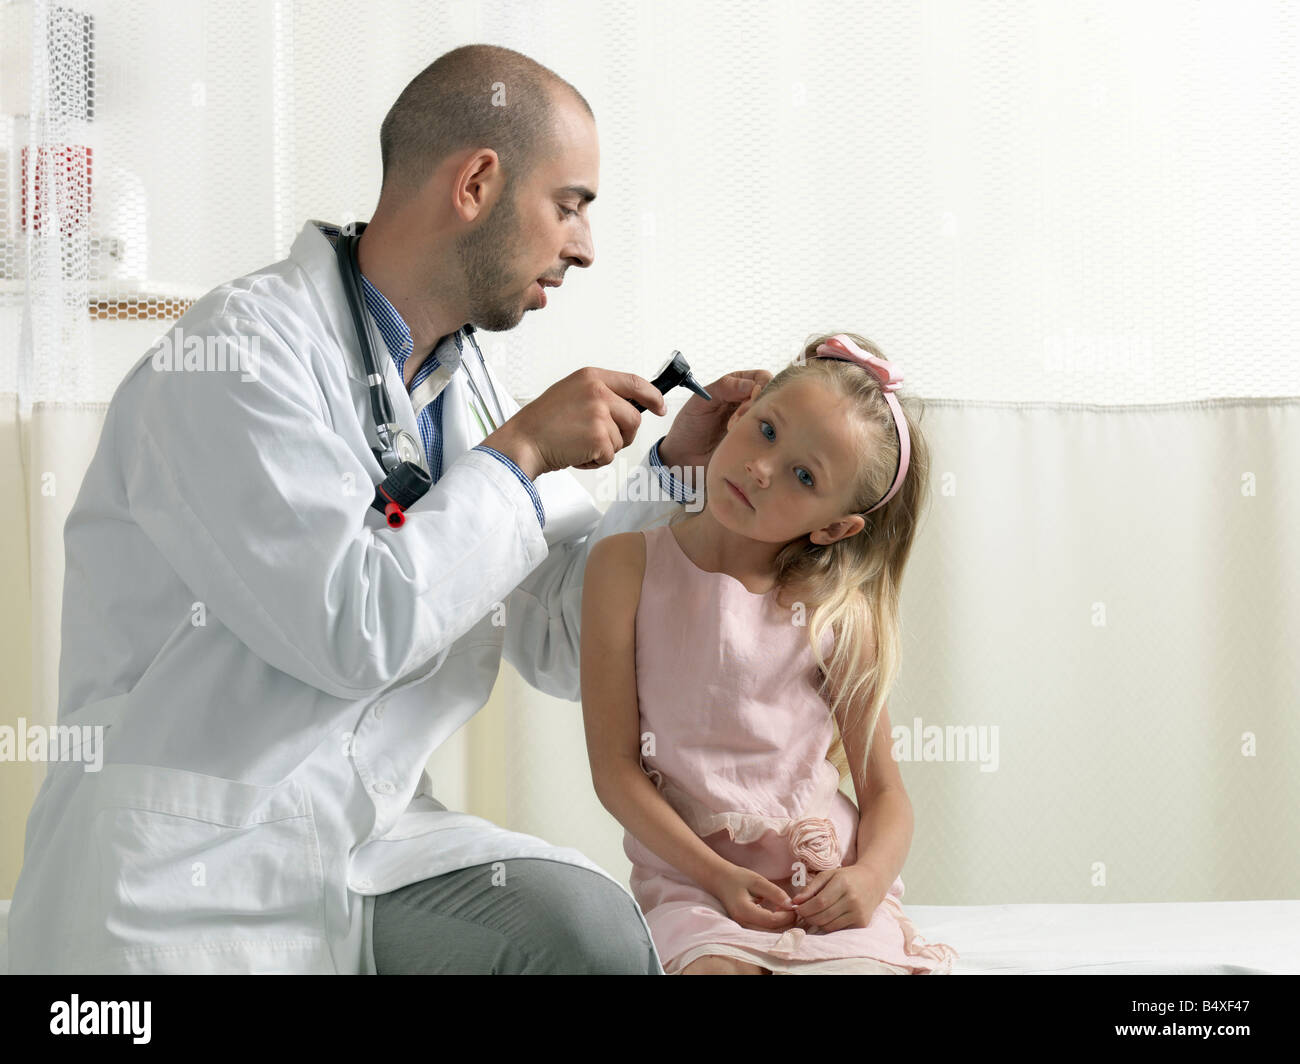 Doctor examining girl Stock Photo